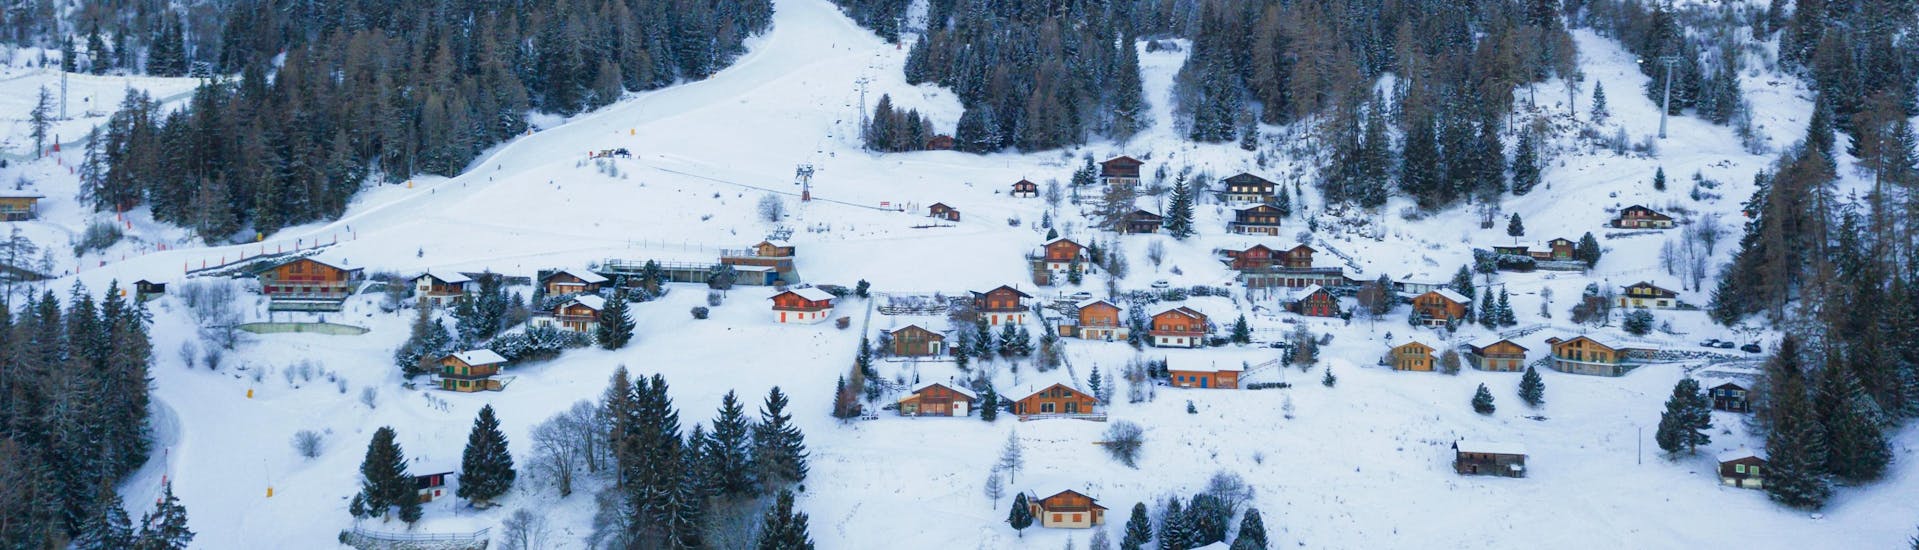 Vue aérienne du petit village de La Tzoumaz, une station de ski suisse populaire dans laquelle les visiteurs peuvent réserver des cours de ski avec les écoles de ski locales.